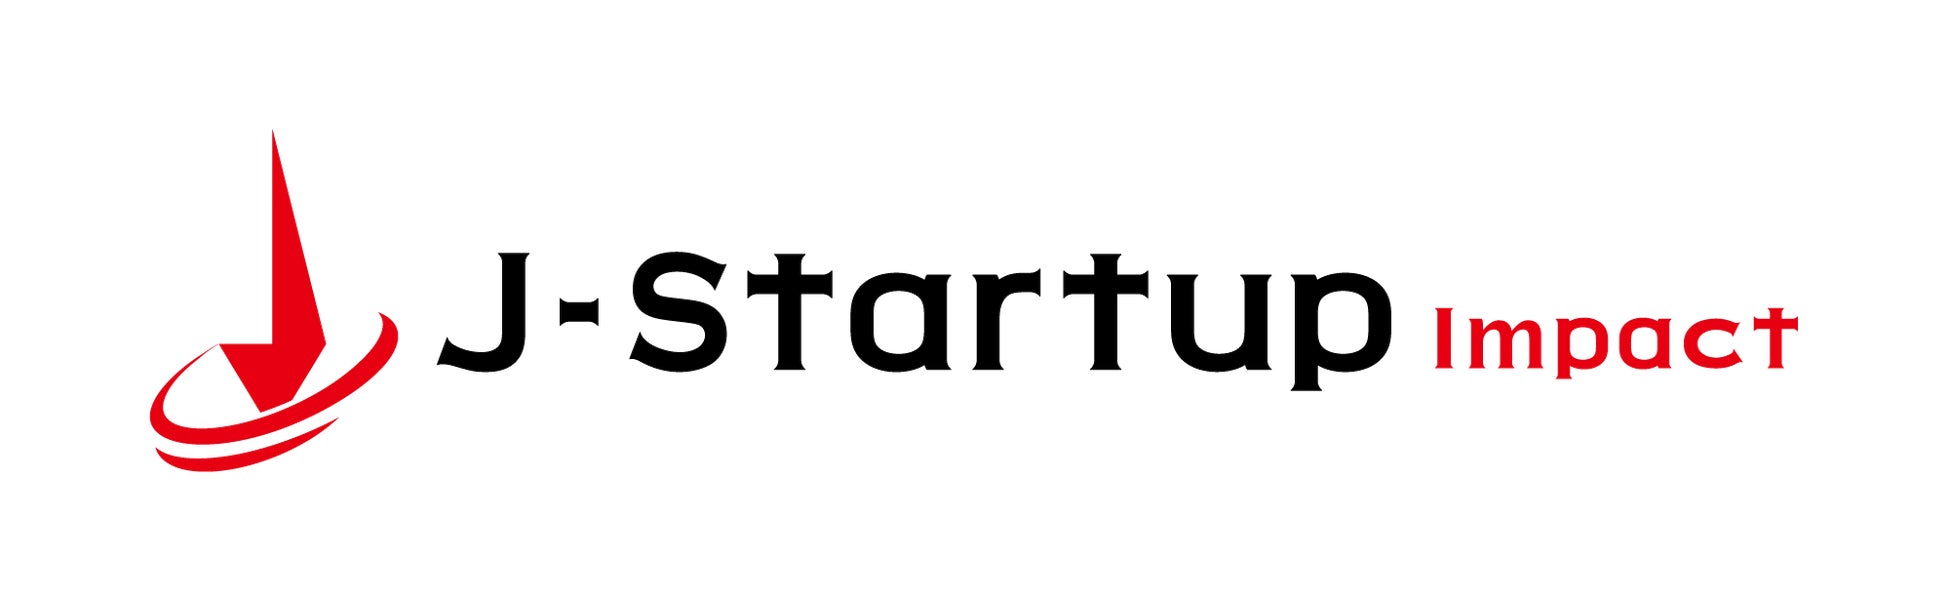 経済産業省が新設したインパクトスタートアップ育成支援プログラム「J-Startup Impact」に坂ノ途中が選定されました。のサブ画像1